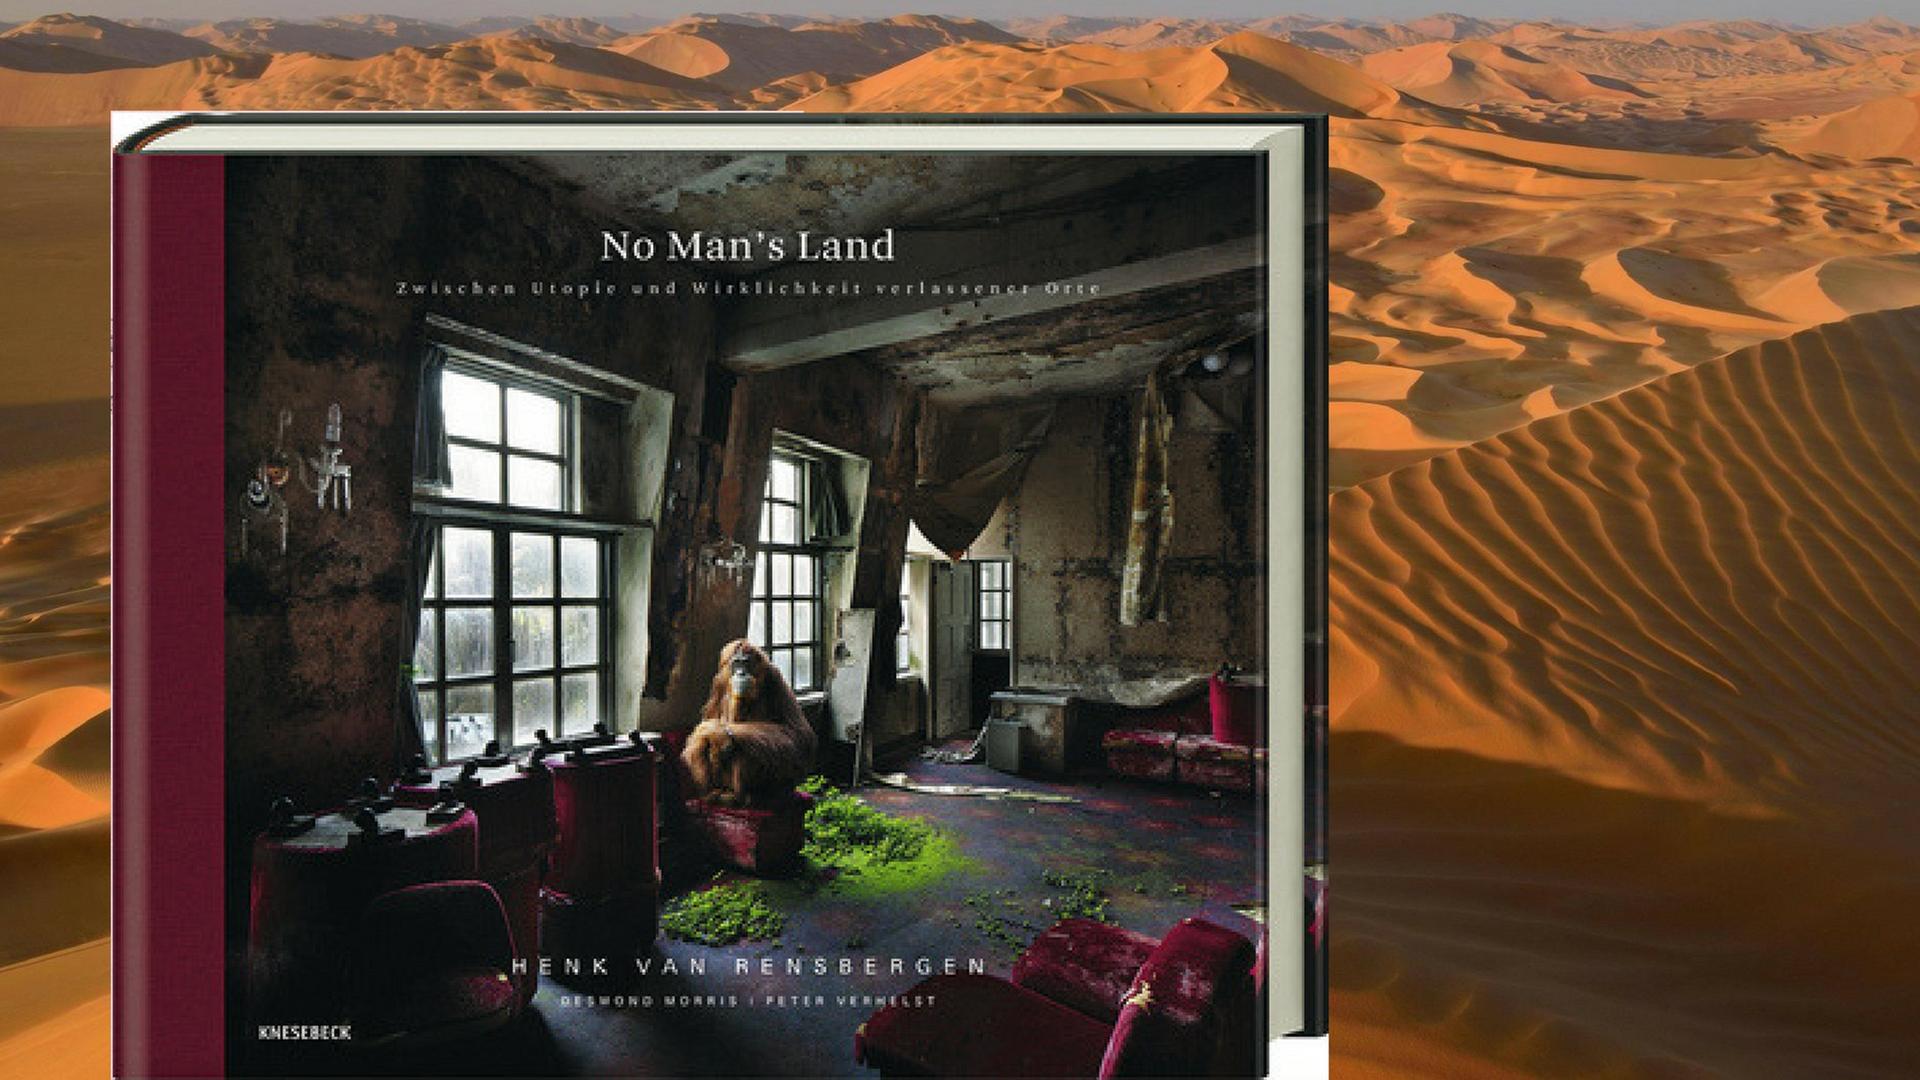 Henk van Rensbergen fotografiert verlassene Orte wie Szenen einer postapokalyptischen Welt, Hintergrund: Wüste Dhofar.